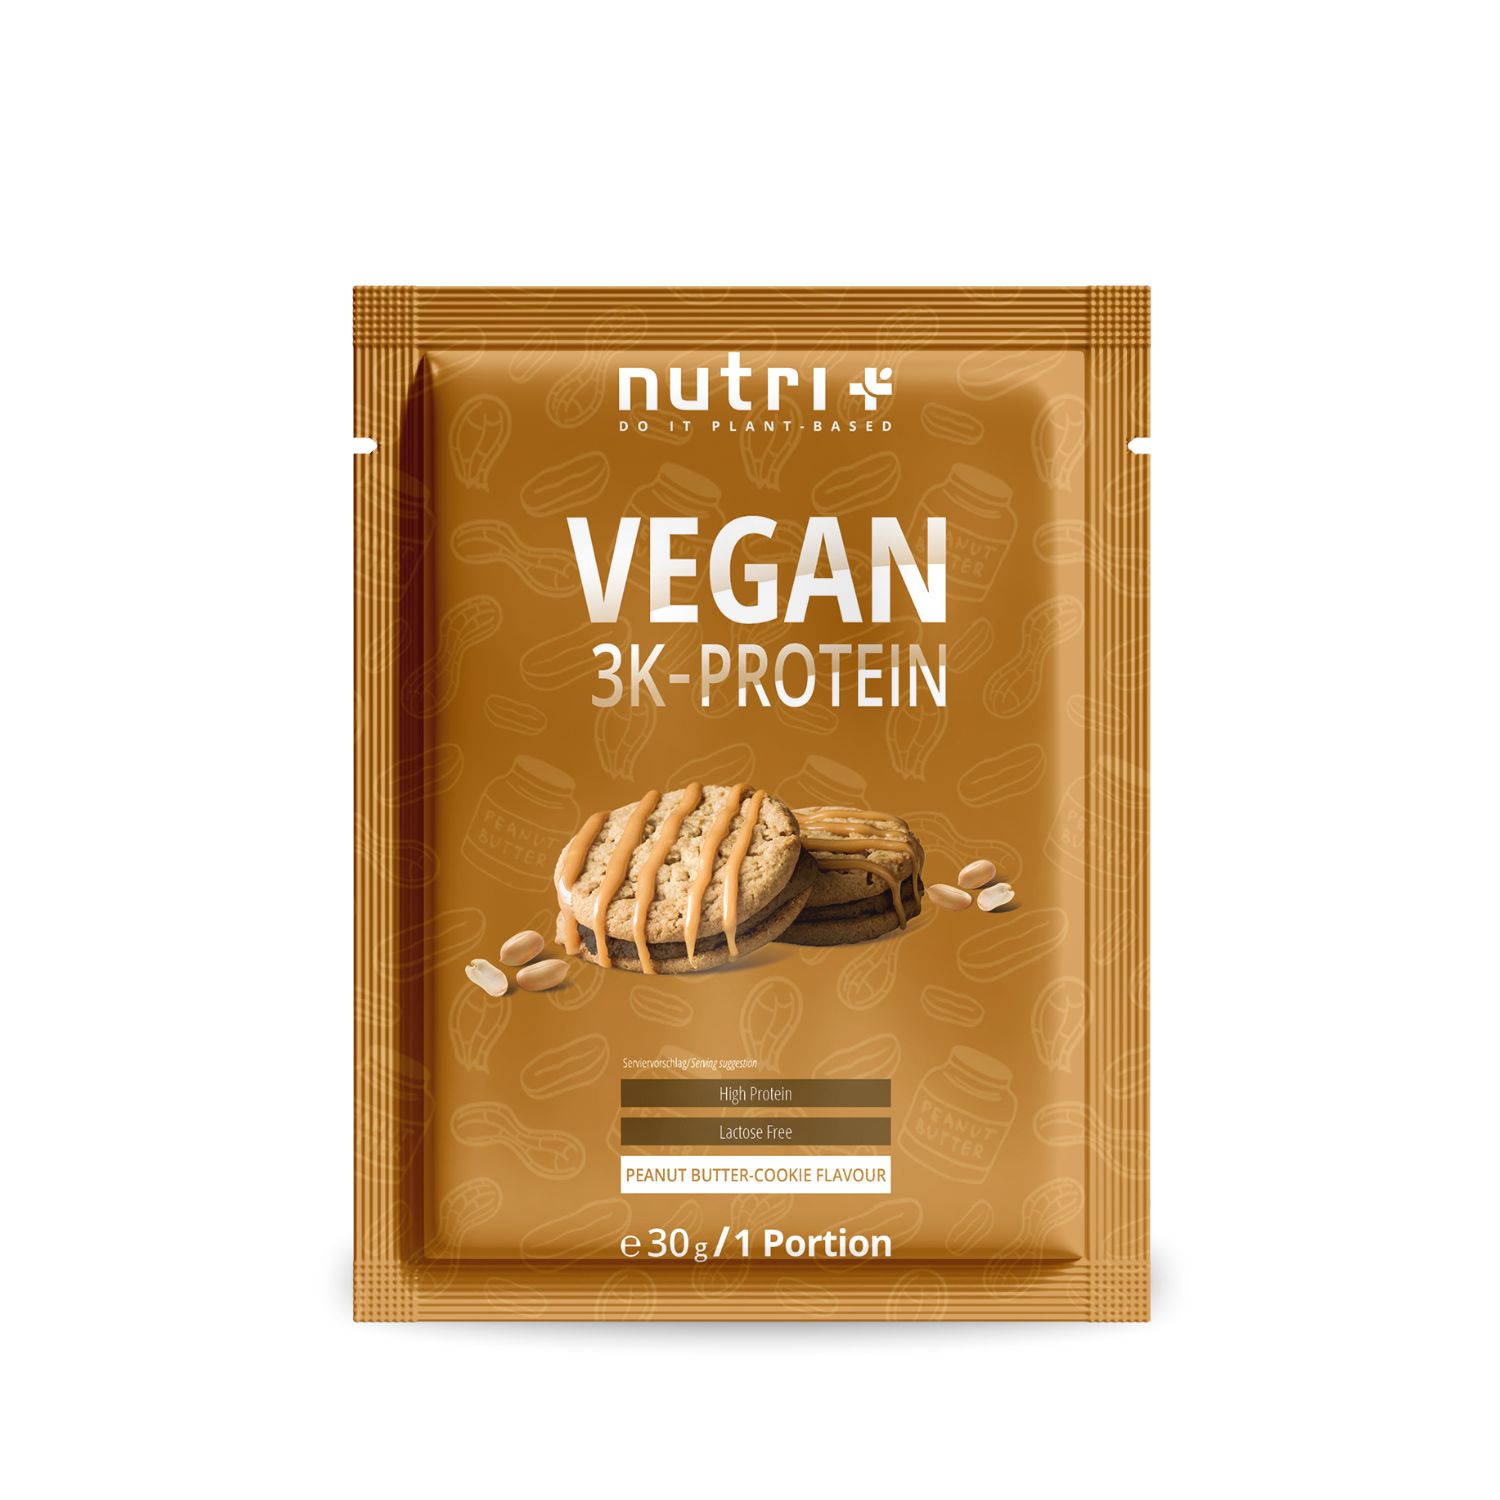 Vegan 3K Protein Powder Samples